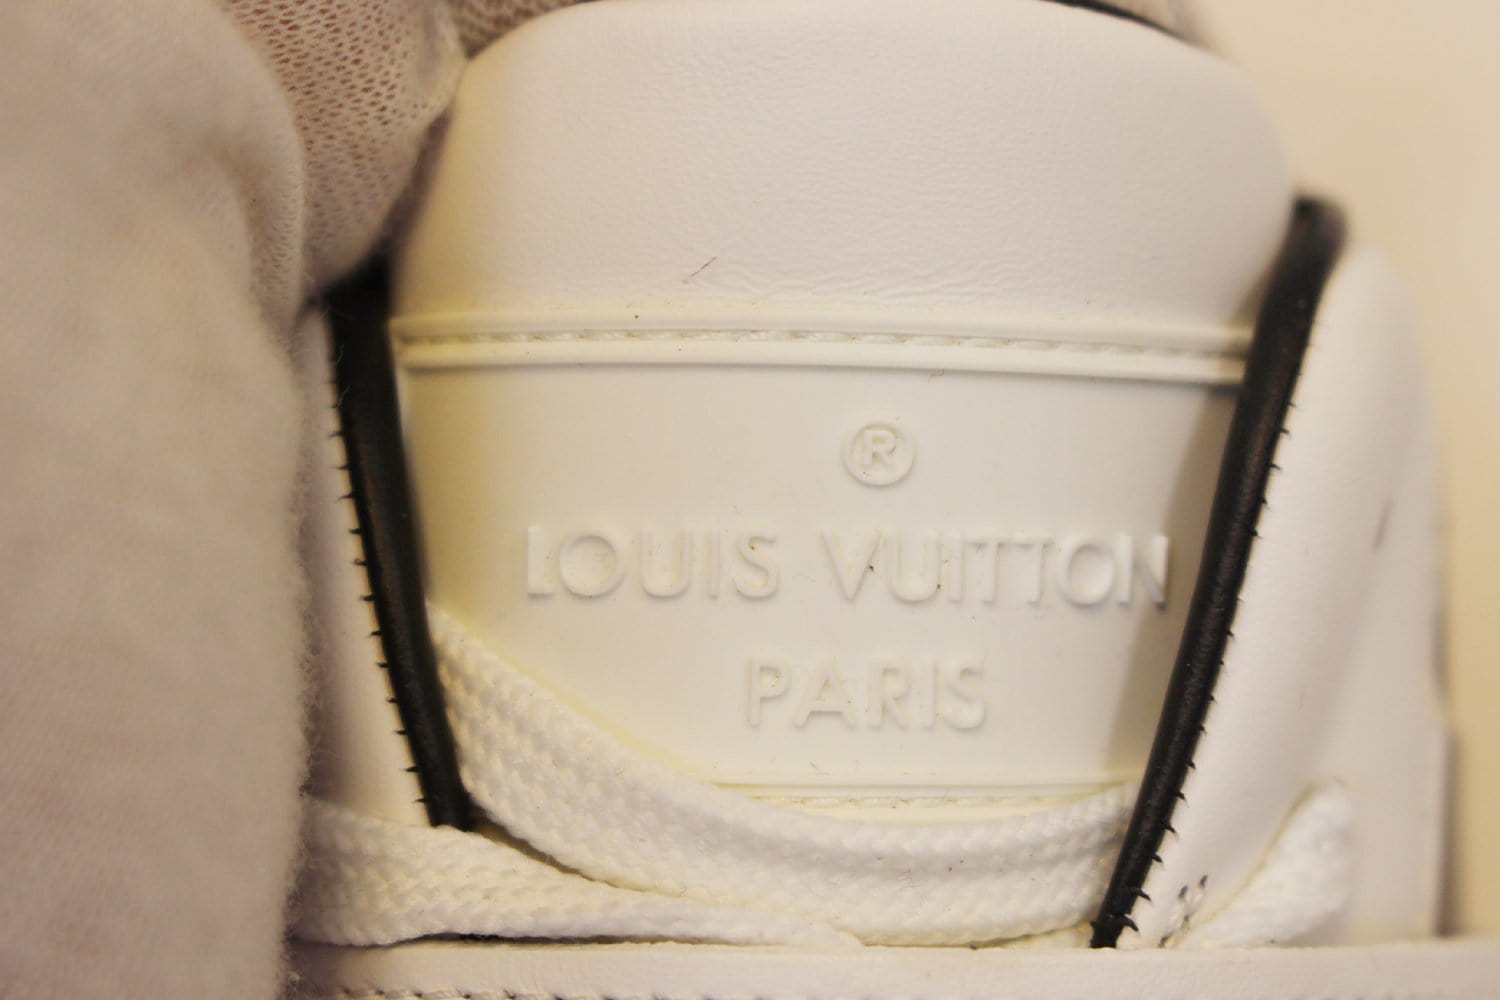 Louis Vuitton, Shoes, Louis Vuitton Damier Graphite Mens Hightop Sneakers